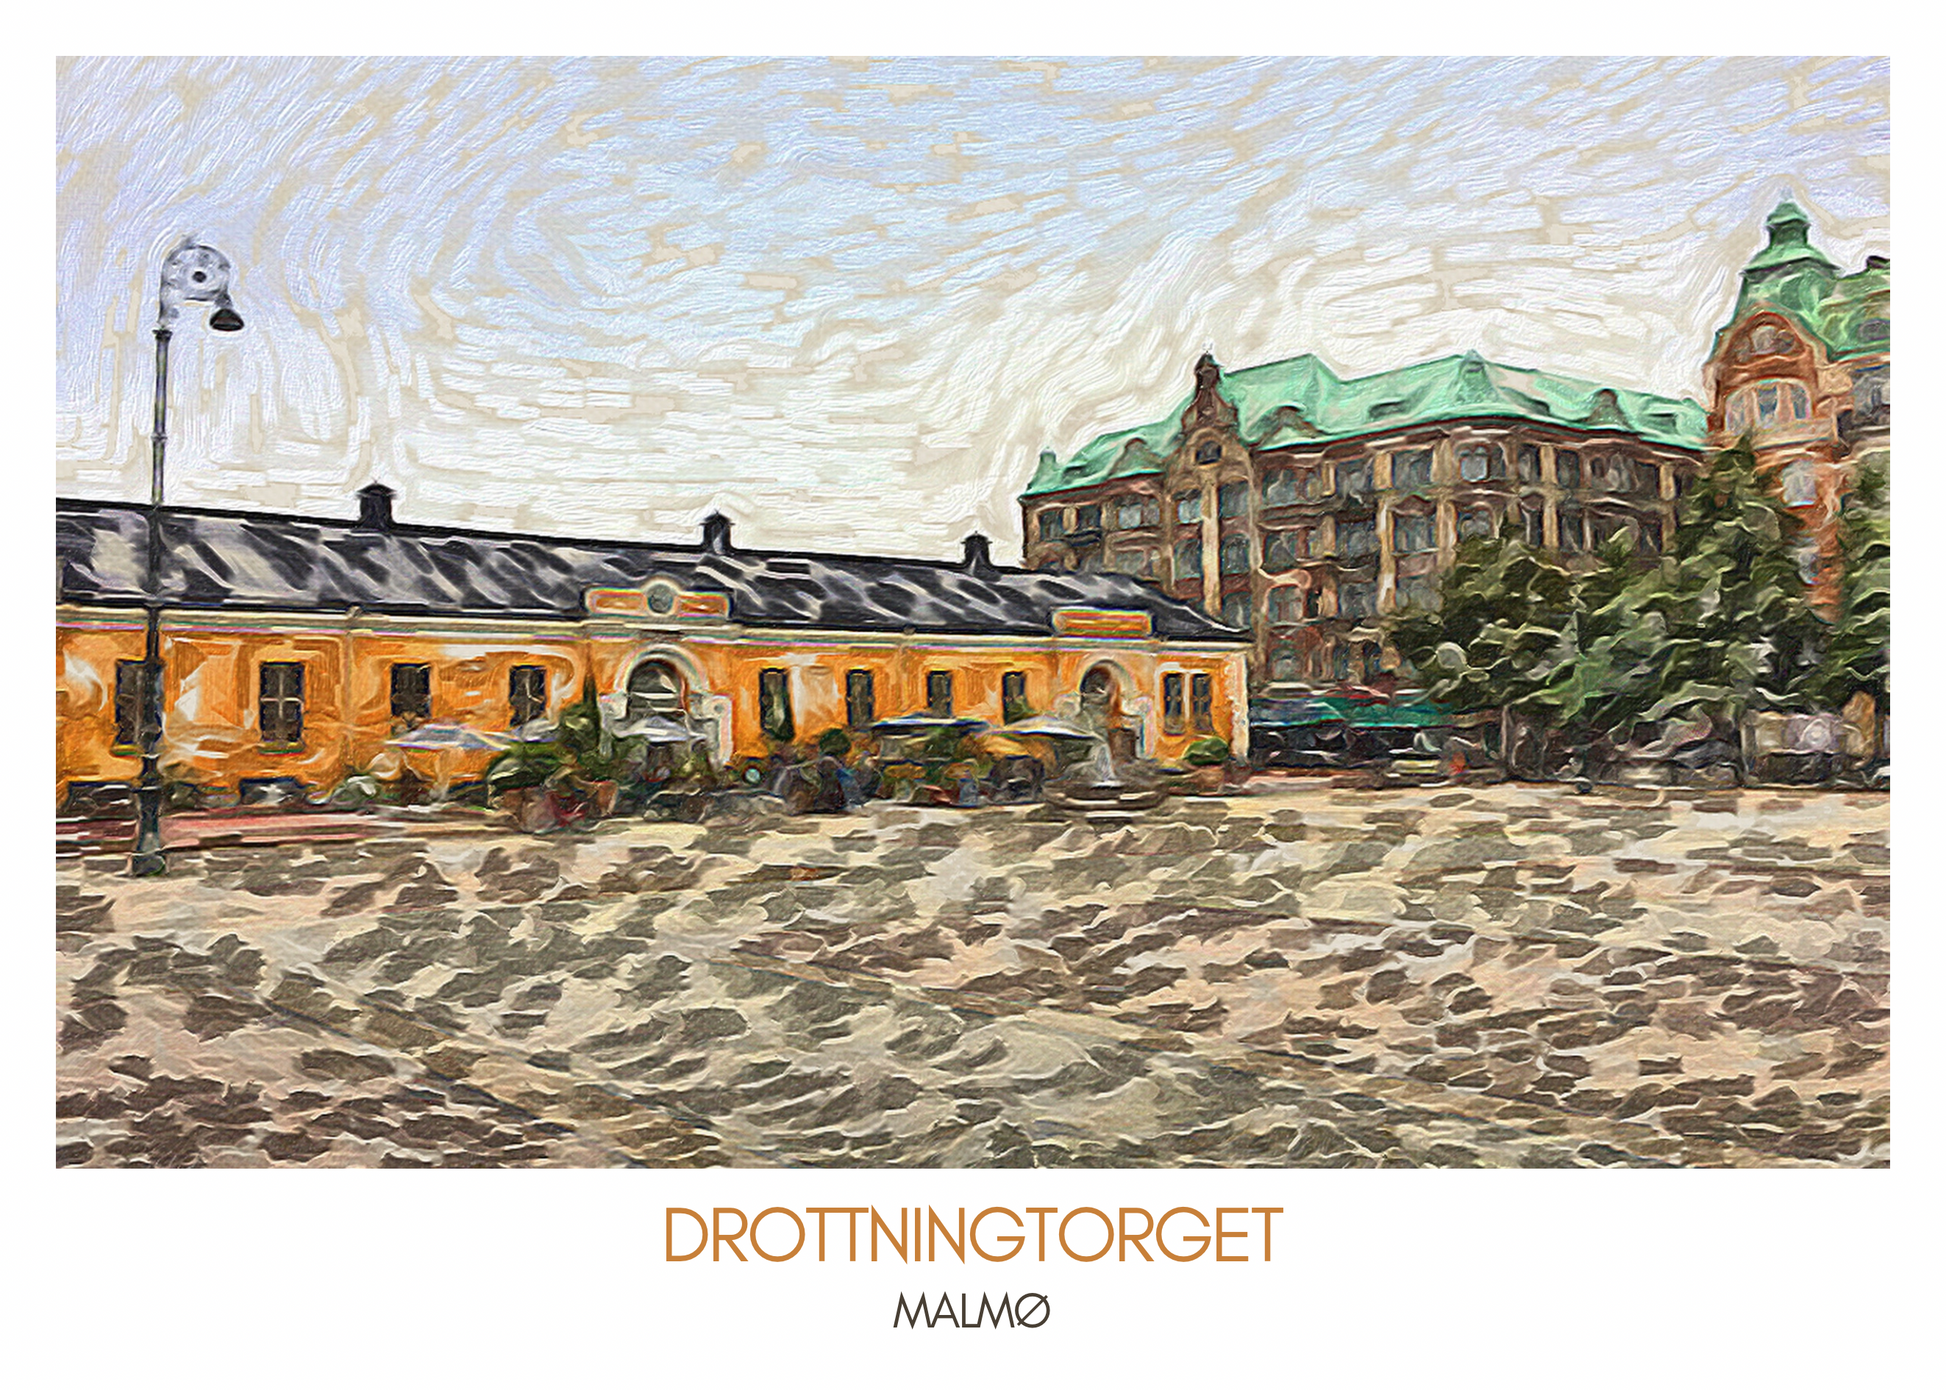 Bild på en poster som visar Drottningtorget i Malmö med Boulebaren, en konverterad 1800-tals ridhusbyggnad, i nostalgisk och pittoresk stil.